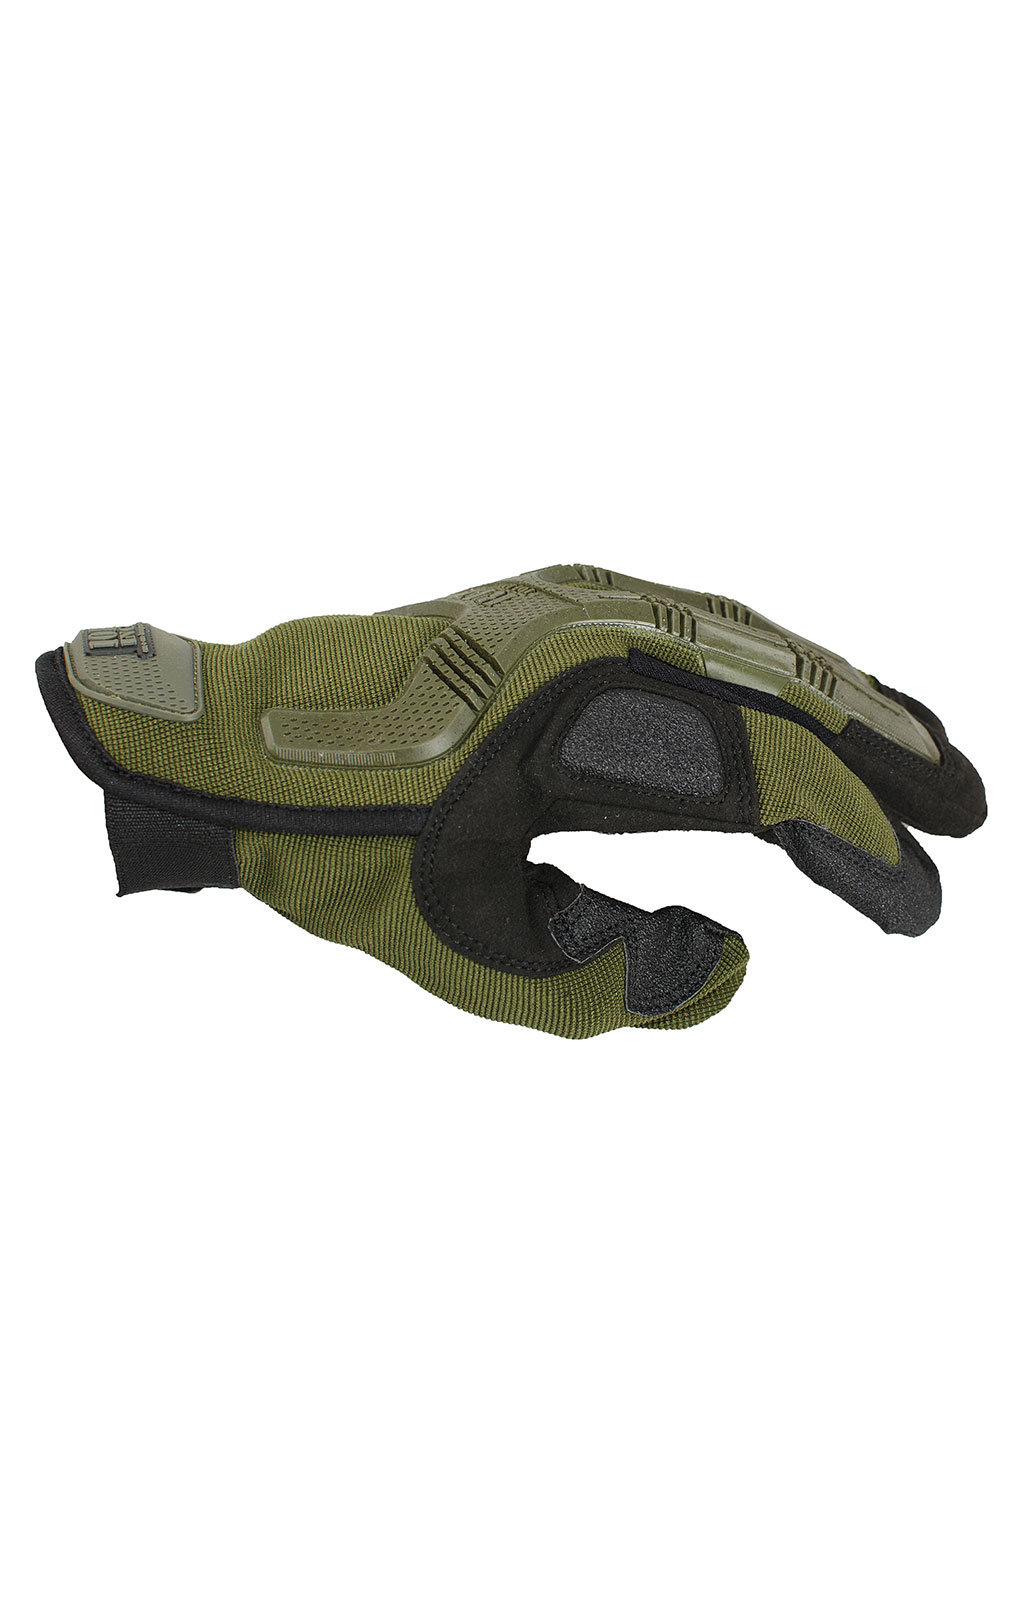 Перчатки тактические Fostex с резин. защитой 101 Inc. olive 